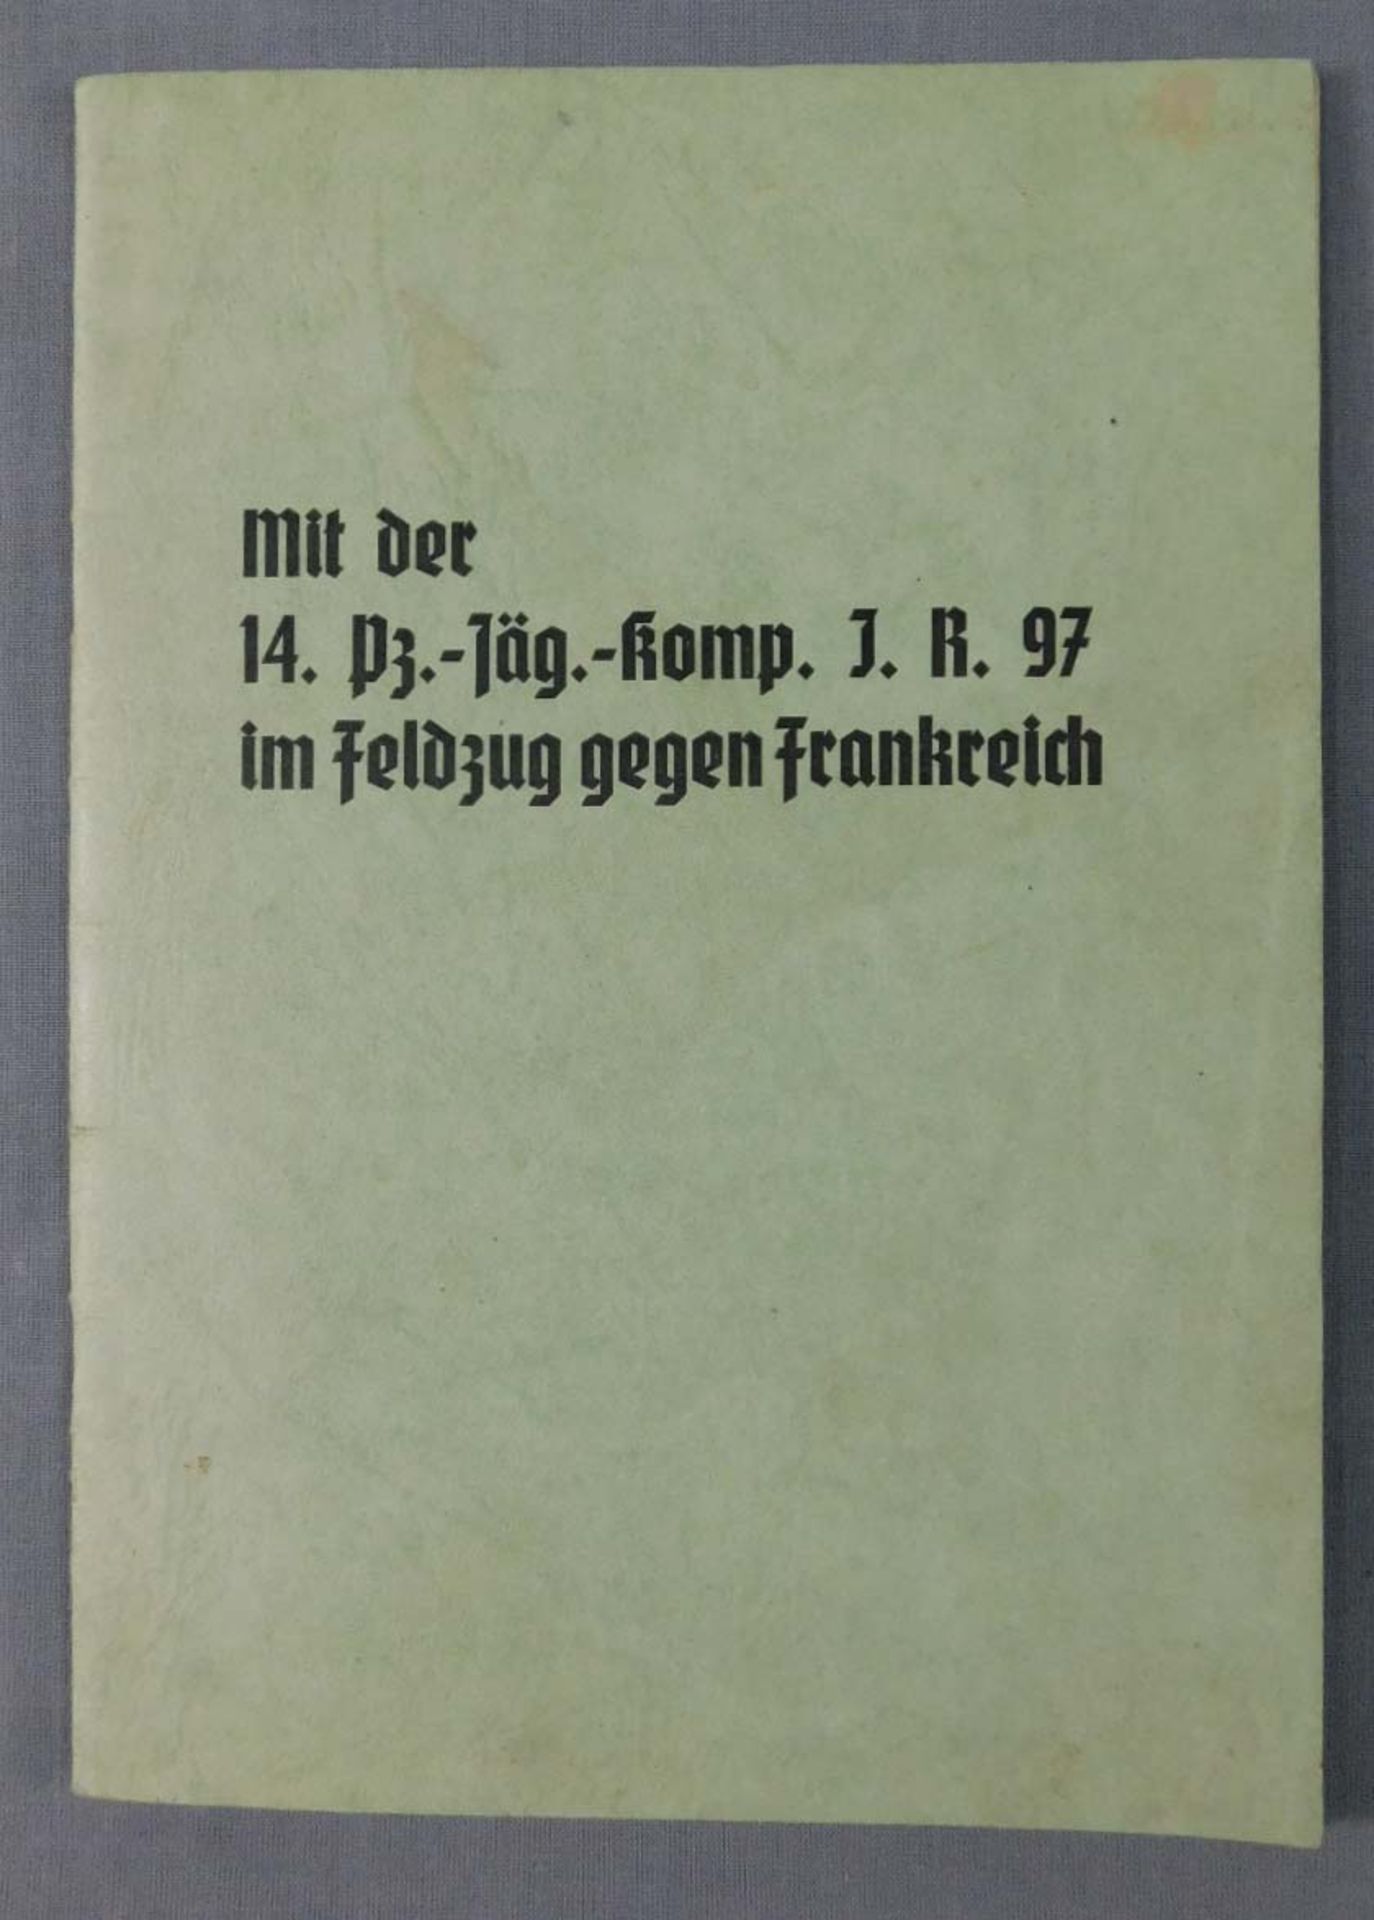 5 Fotoalben 1930er Jahre und 2.Weltkrieg. - Image 9 of 21